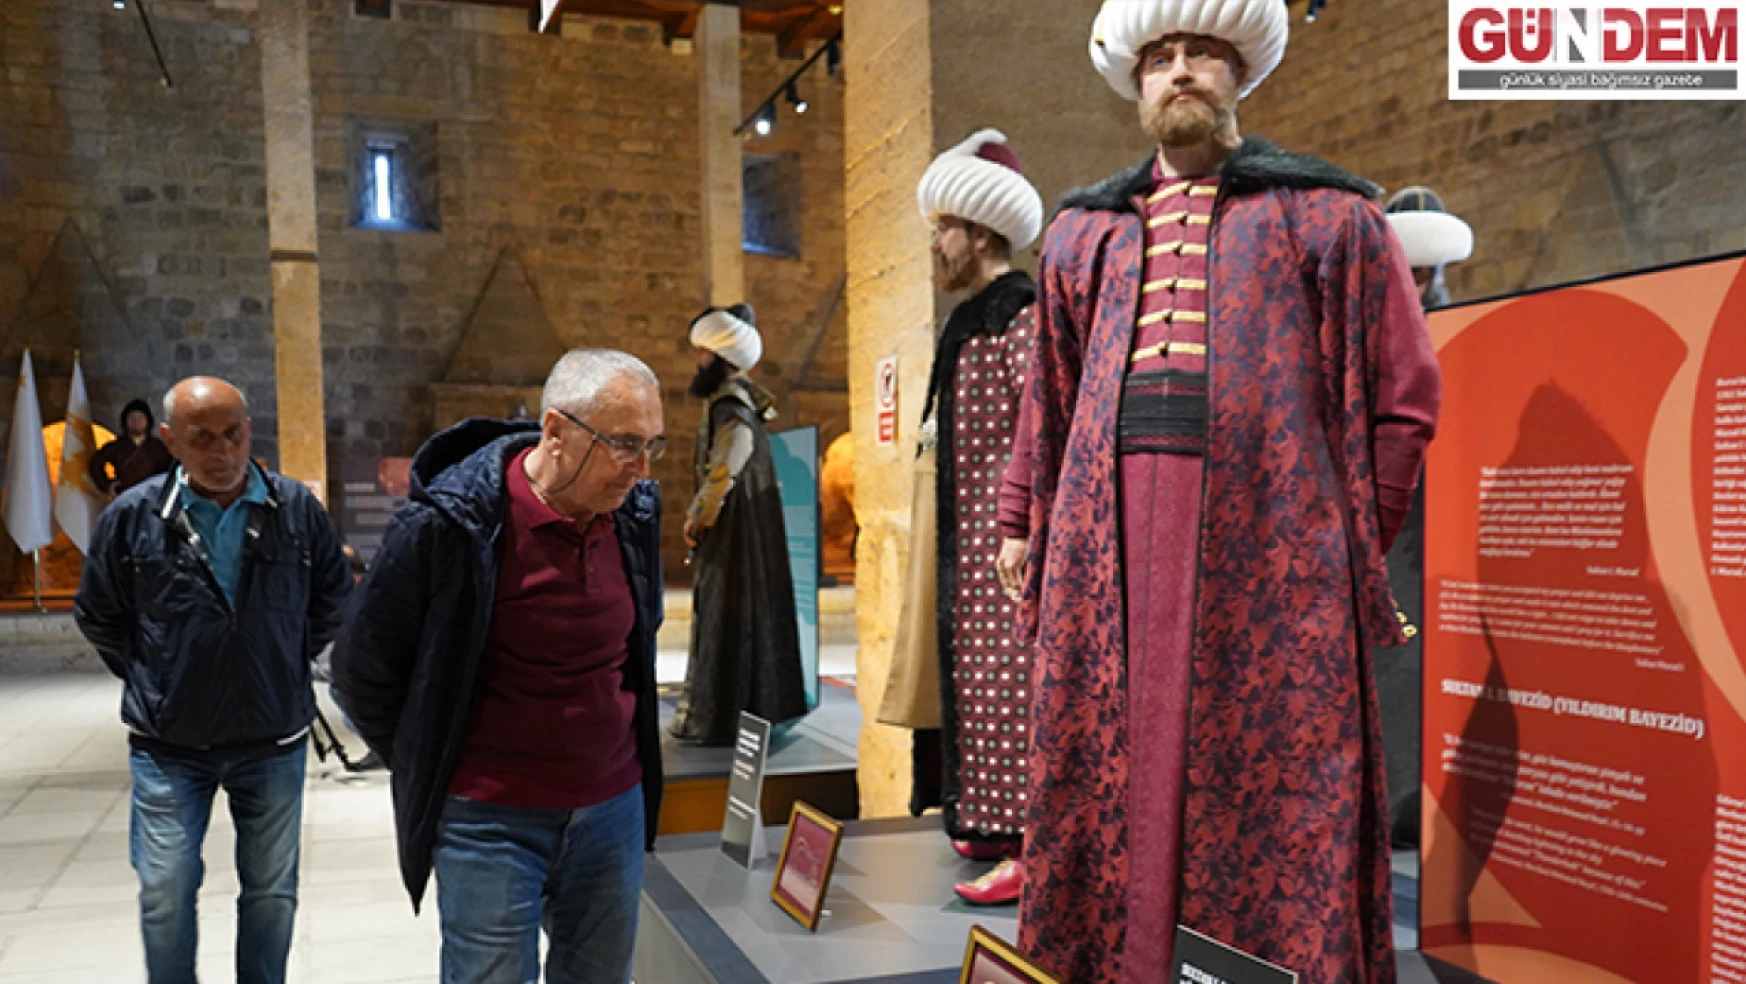 Osmanlı padişahları tuğraları sergisi ziyaretçilerin beğenisine sunuldu